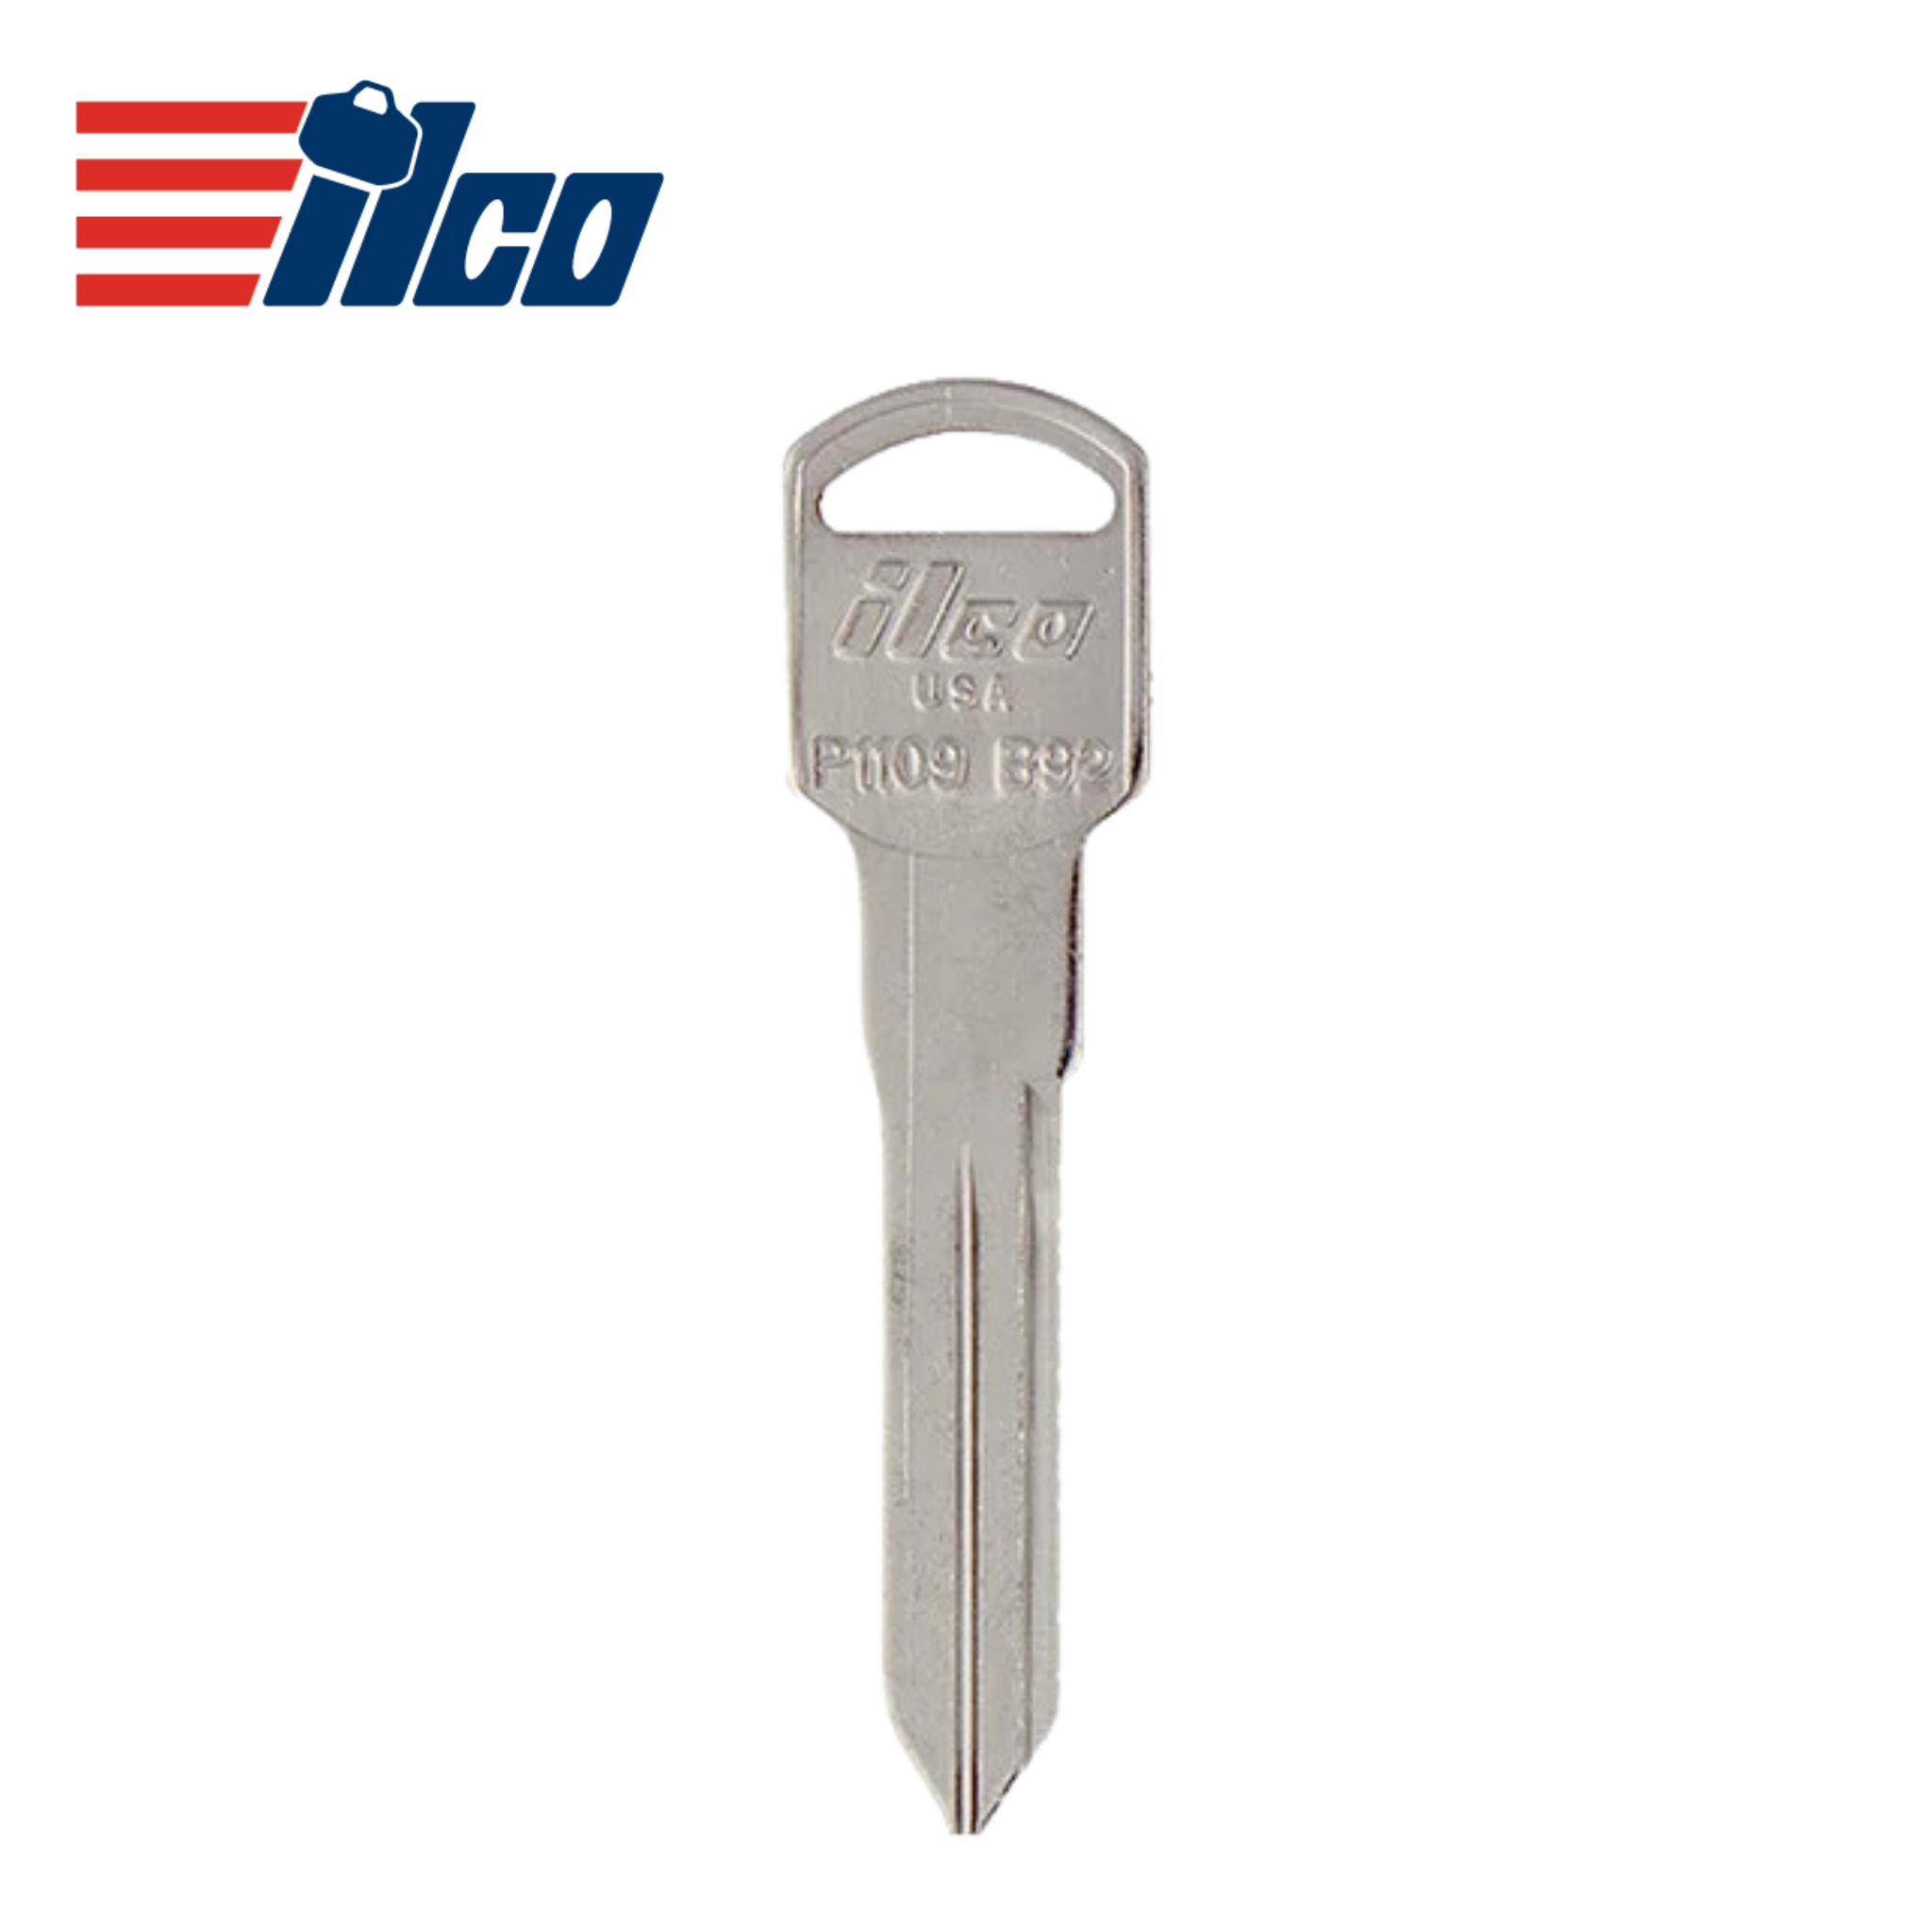 GM - ILCO 1996-2005 Metal Test Key B92/P1109 - Royal Key Supply